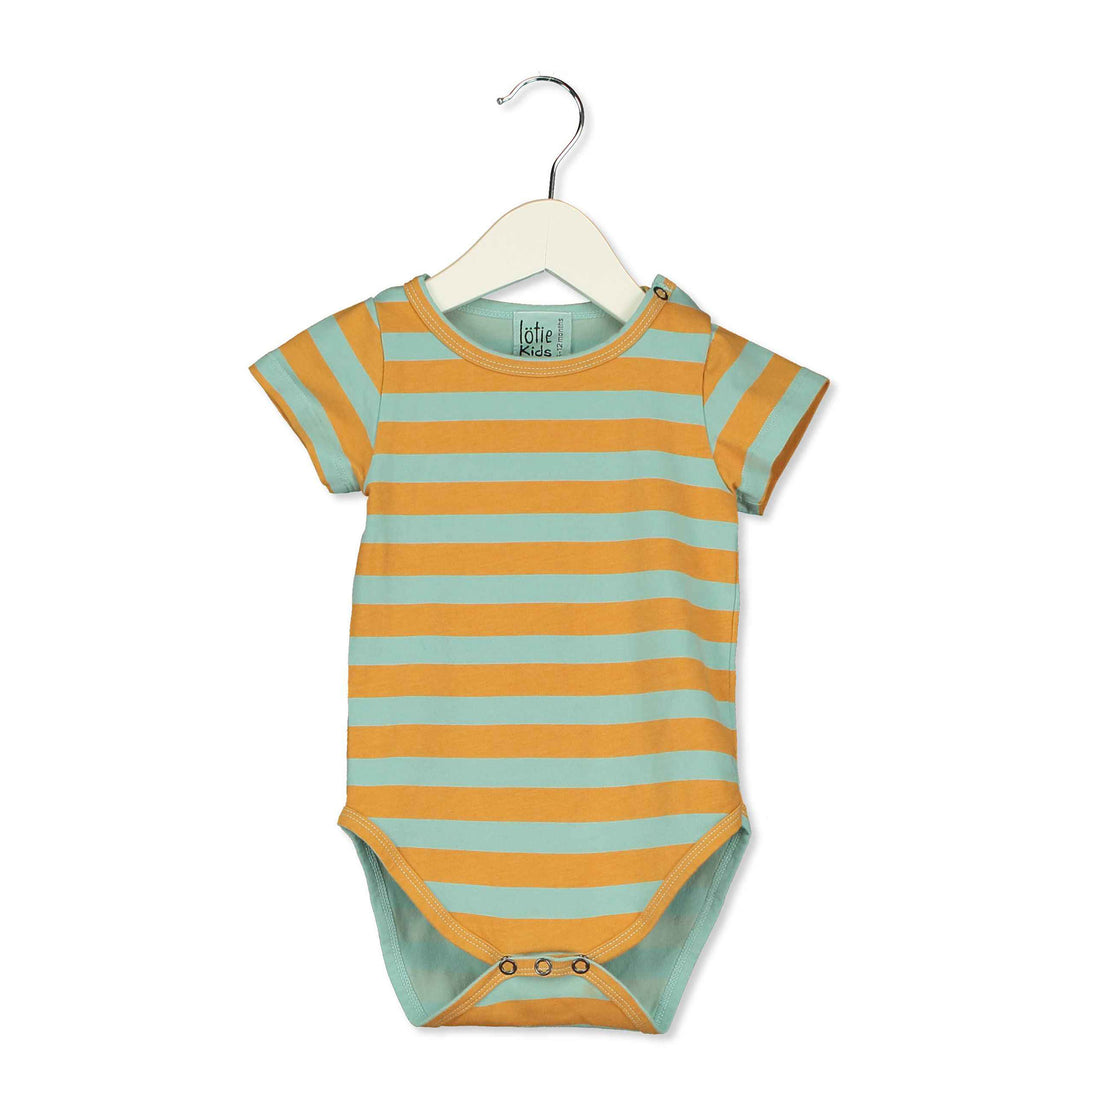 LotieKids Seagreen Stripes Baby Body